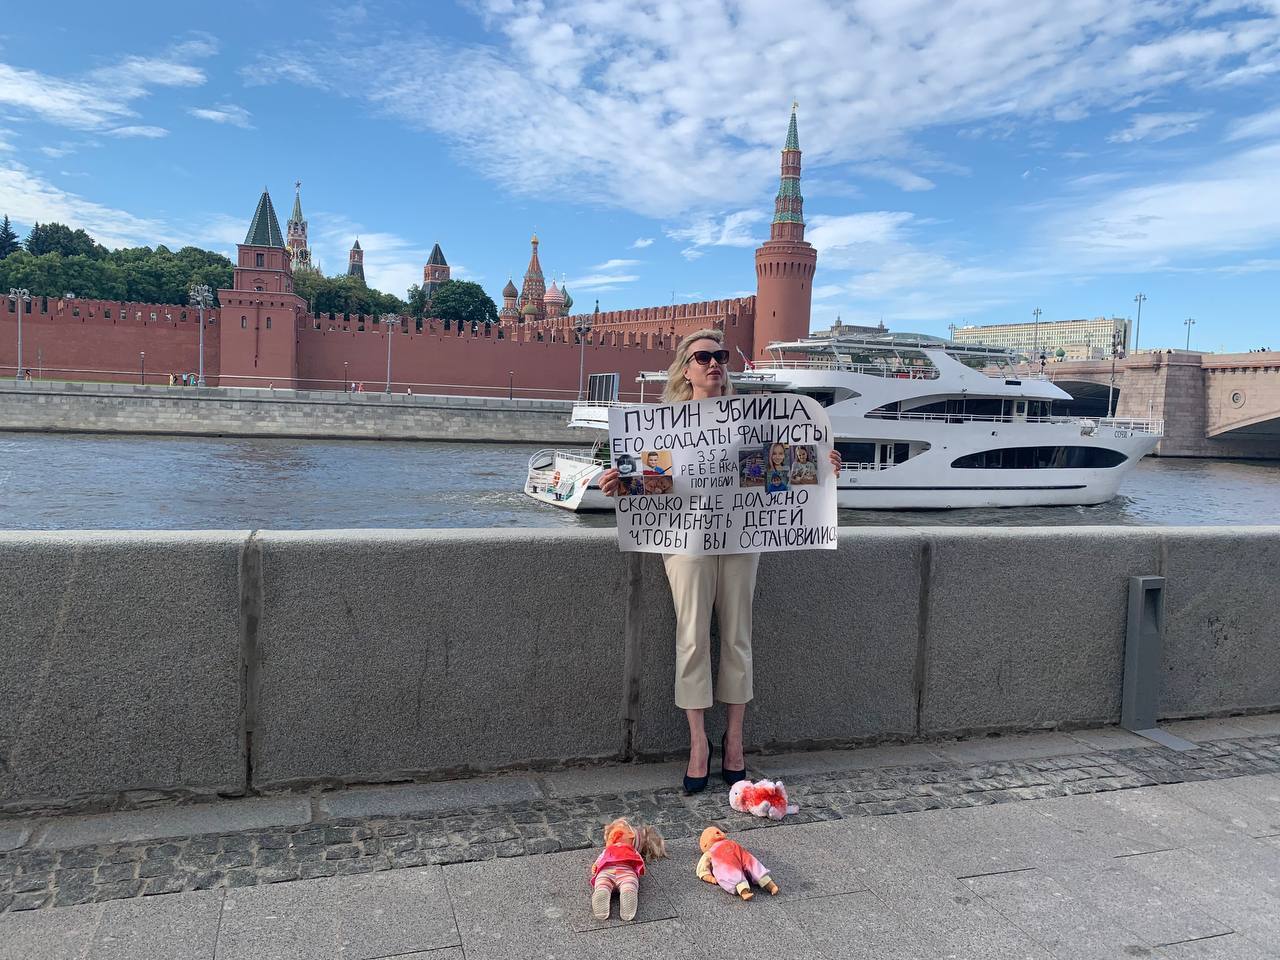 Пропагандистка влаштувала "одиночний пікет" на тлі Кремля